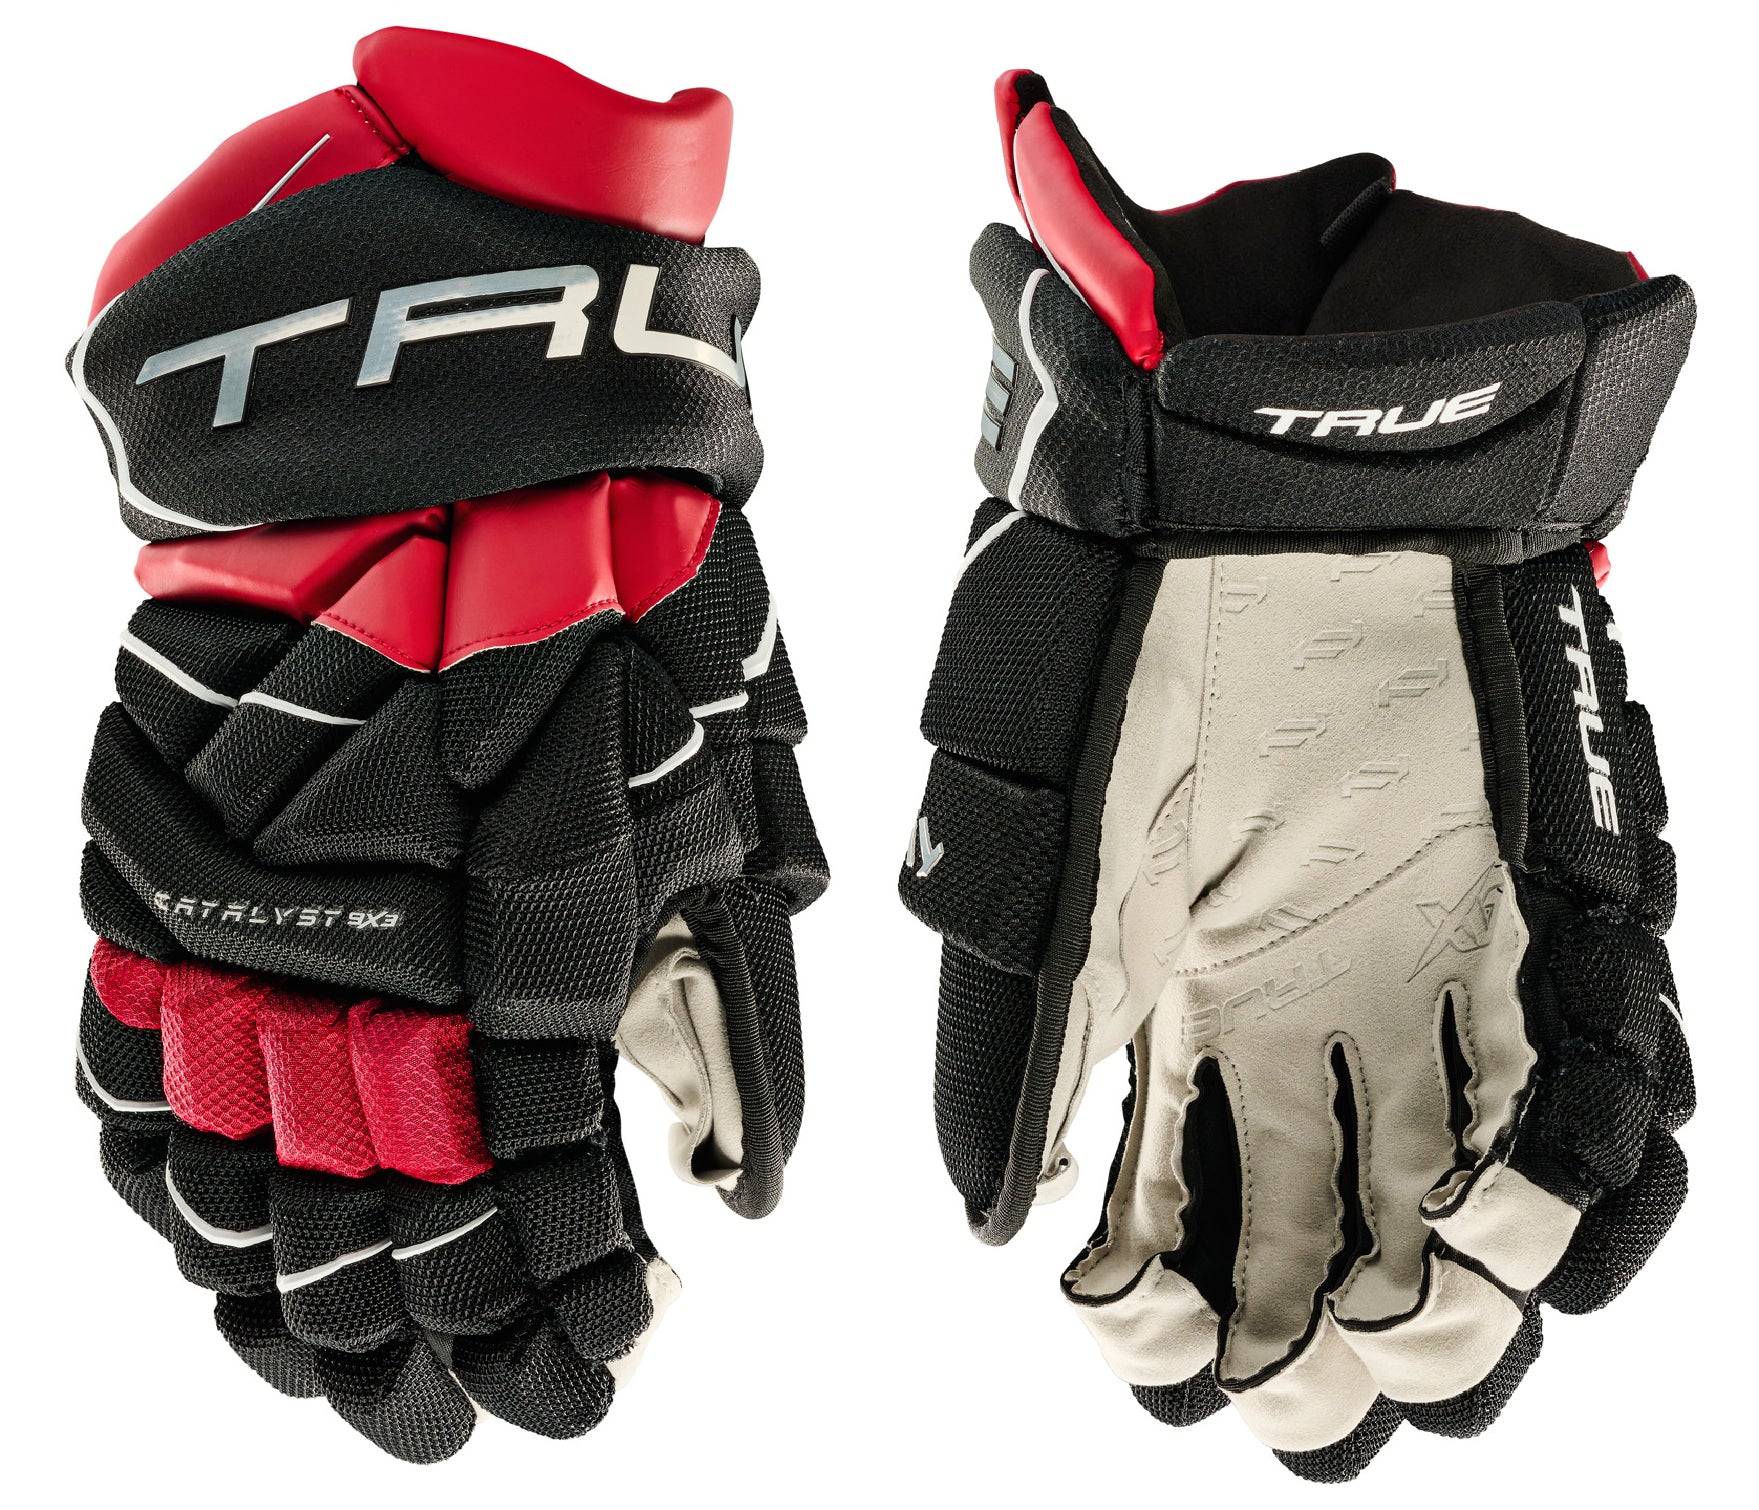 True Catalyst 9X3 Junior Hockey Gloves